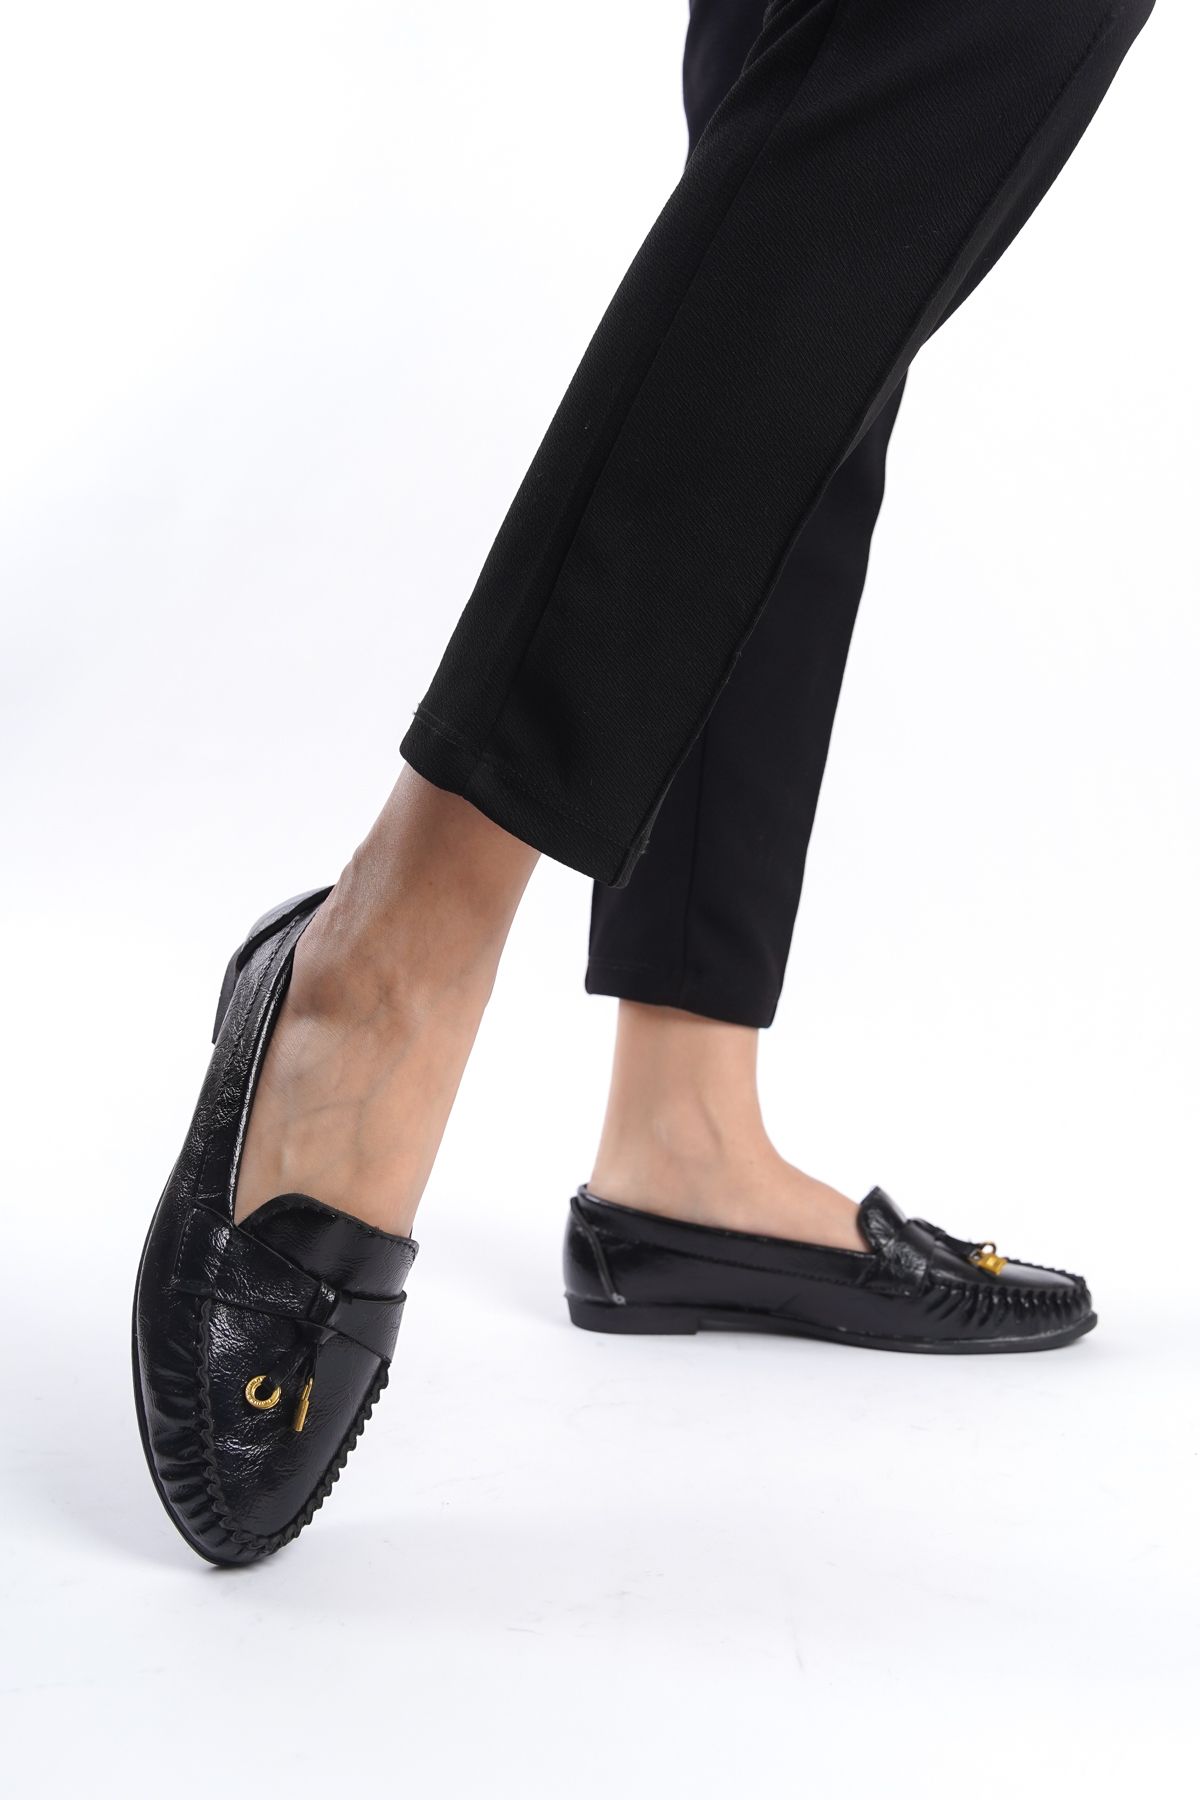 eformoda by emre yılmaz Siyah Kadın Günlük Rahat Tokalı Casual Klasik Ayakkabı Babet LRS02